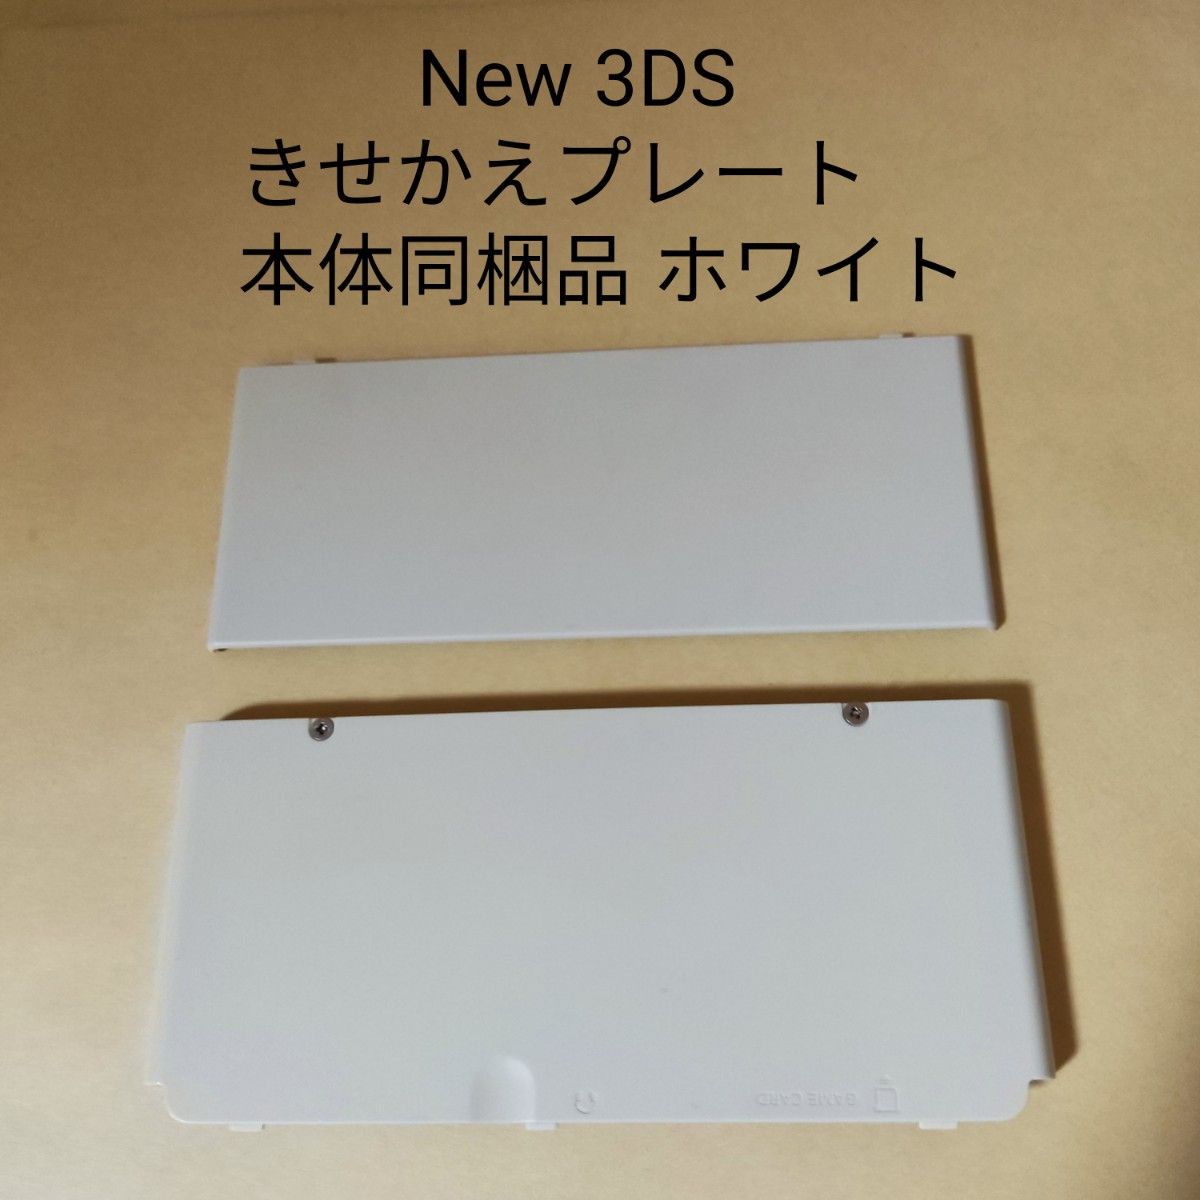 New ニンテンドー 3DS きせかえプレート  本体同梱品 ホワイト